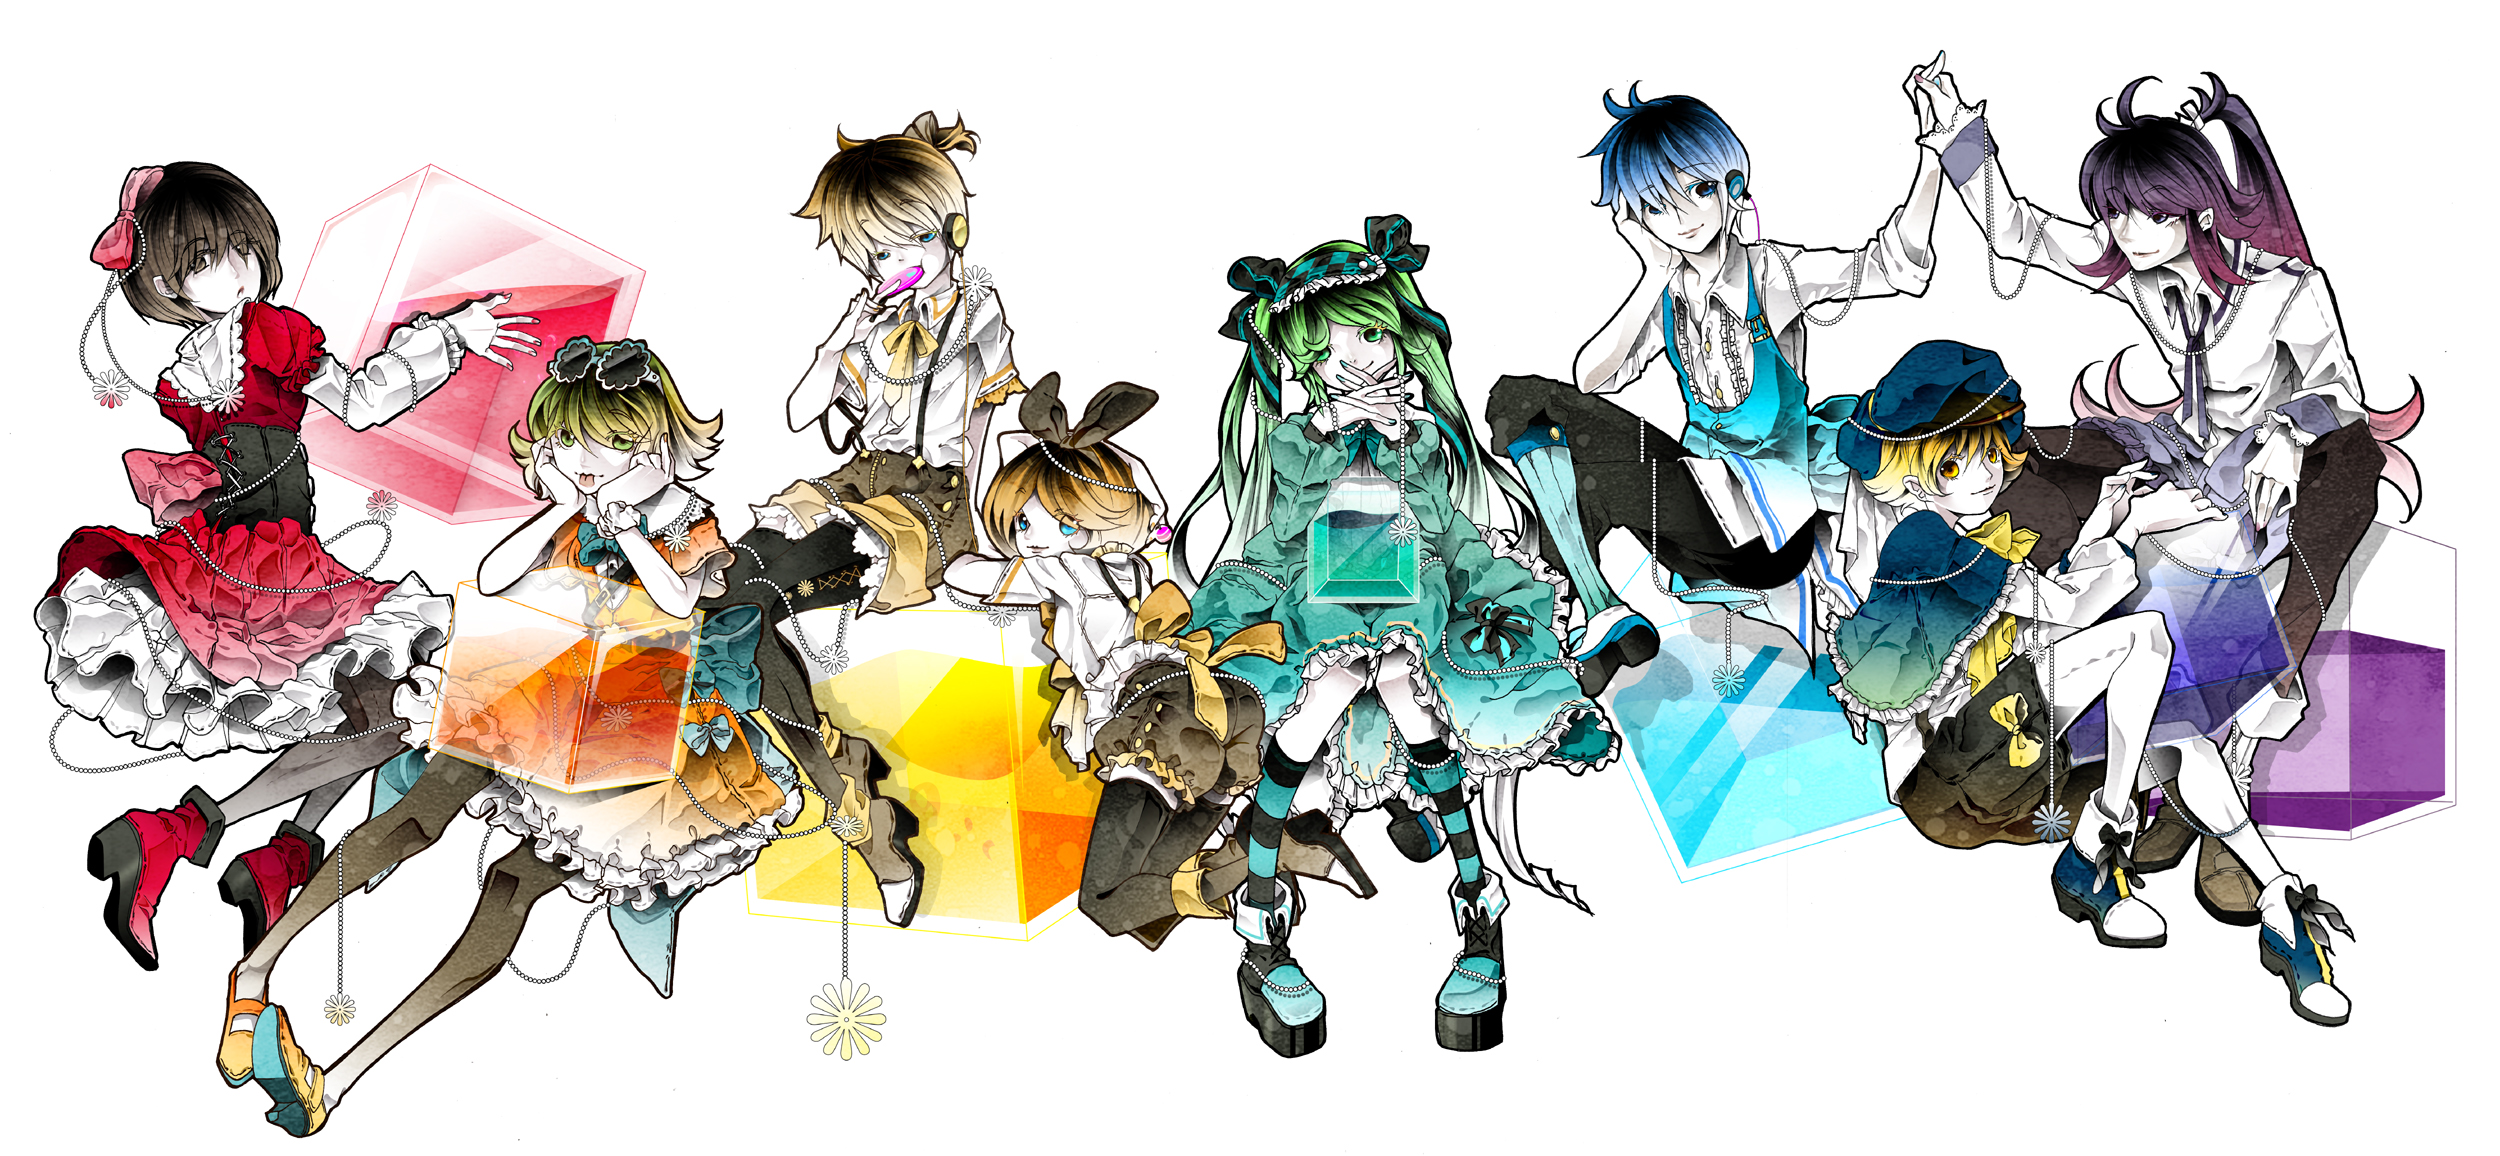 Descarga gratis la imagen Vocaloid, Animado, Hatsune Miku, Rin Kagamine, Gumi (Vocaloid), Kaito (Vocaloid), Len Kagamine, Meiko (Vocaloid), Kamui Gakupo, Oliver (Vocaloid) en el escritorio de tu PC